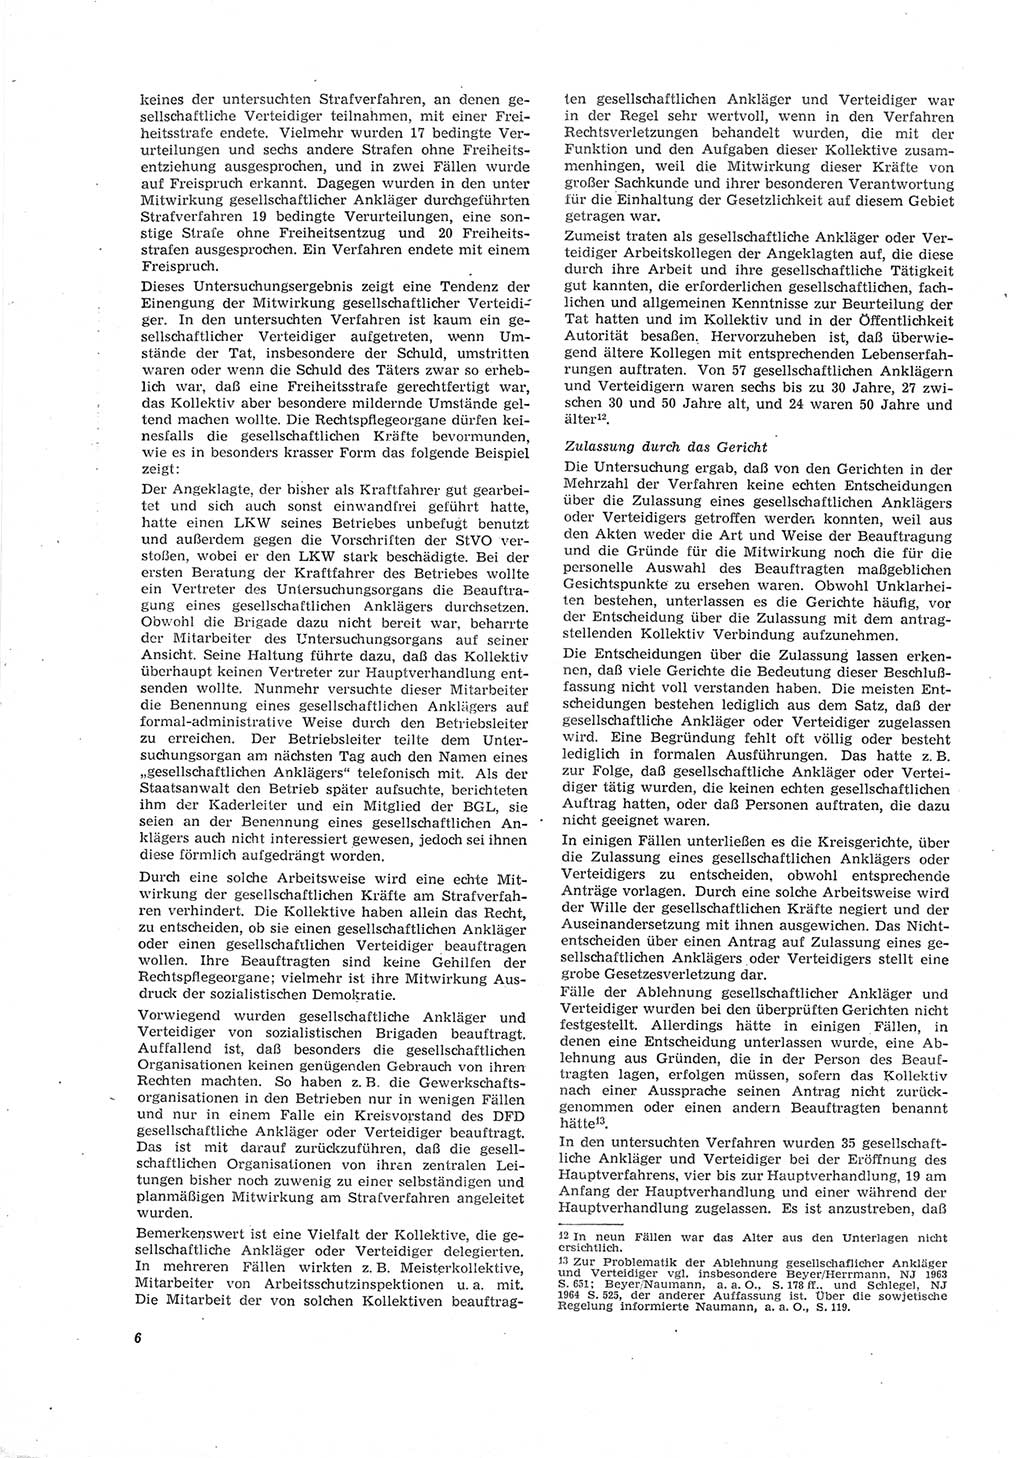 Neue Justiz (NJ), Zeitschrift für Recht und Rechtswissenschaft [Deutsche Demokratische Republik (DDR)], 19. Jahrgang 1965, Seite 6 (NJ DDR 1965, S. 6)